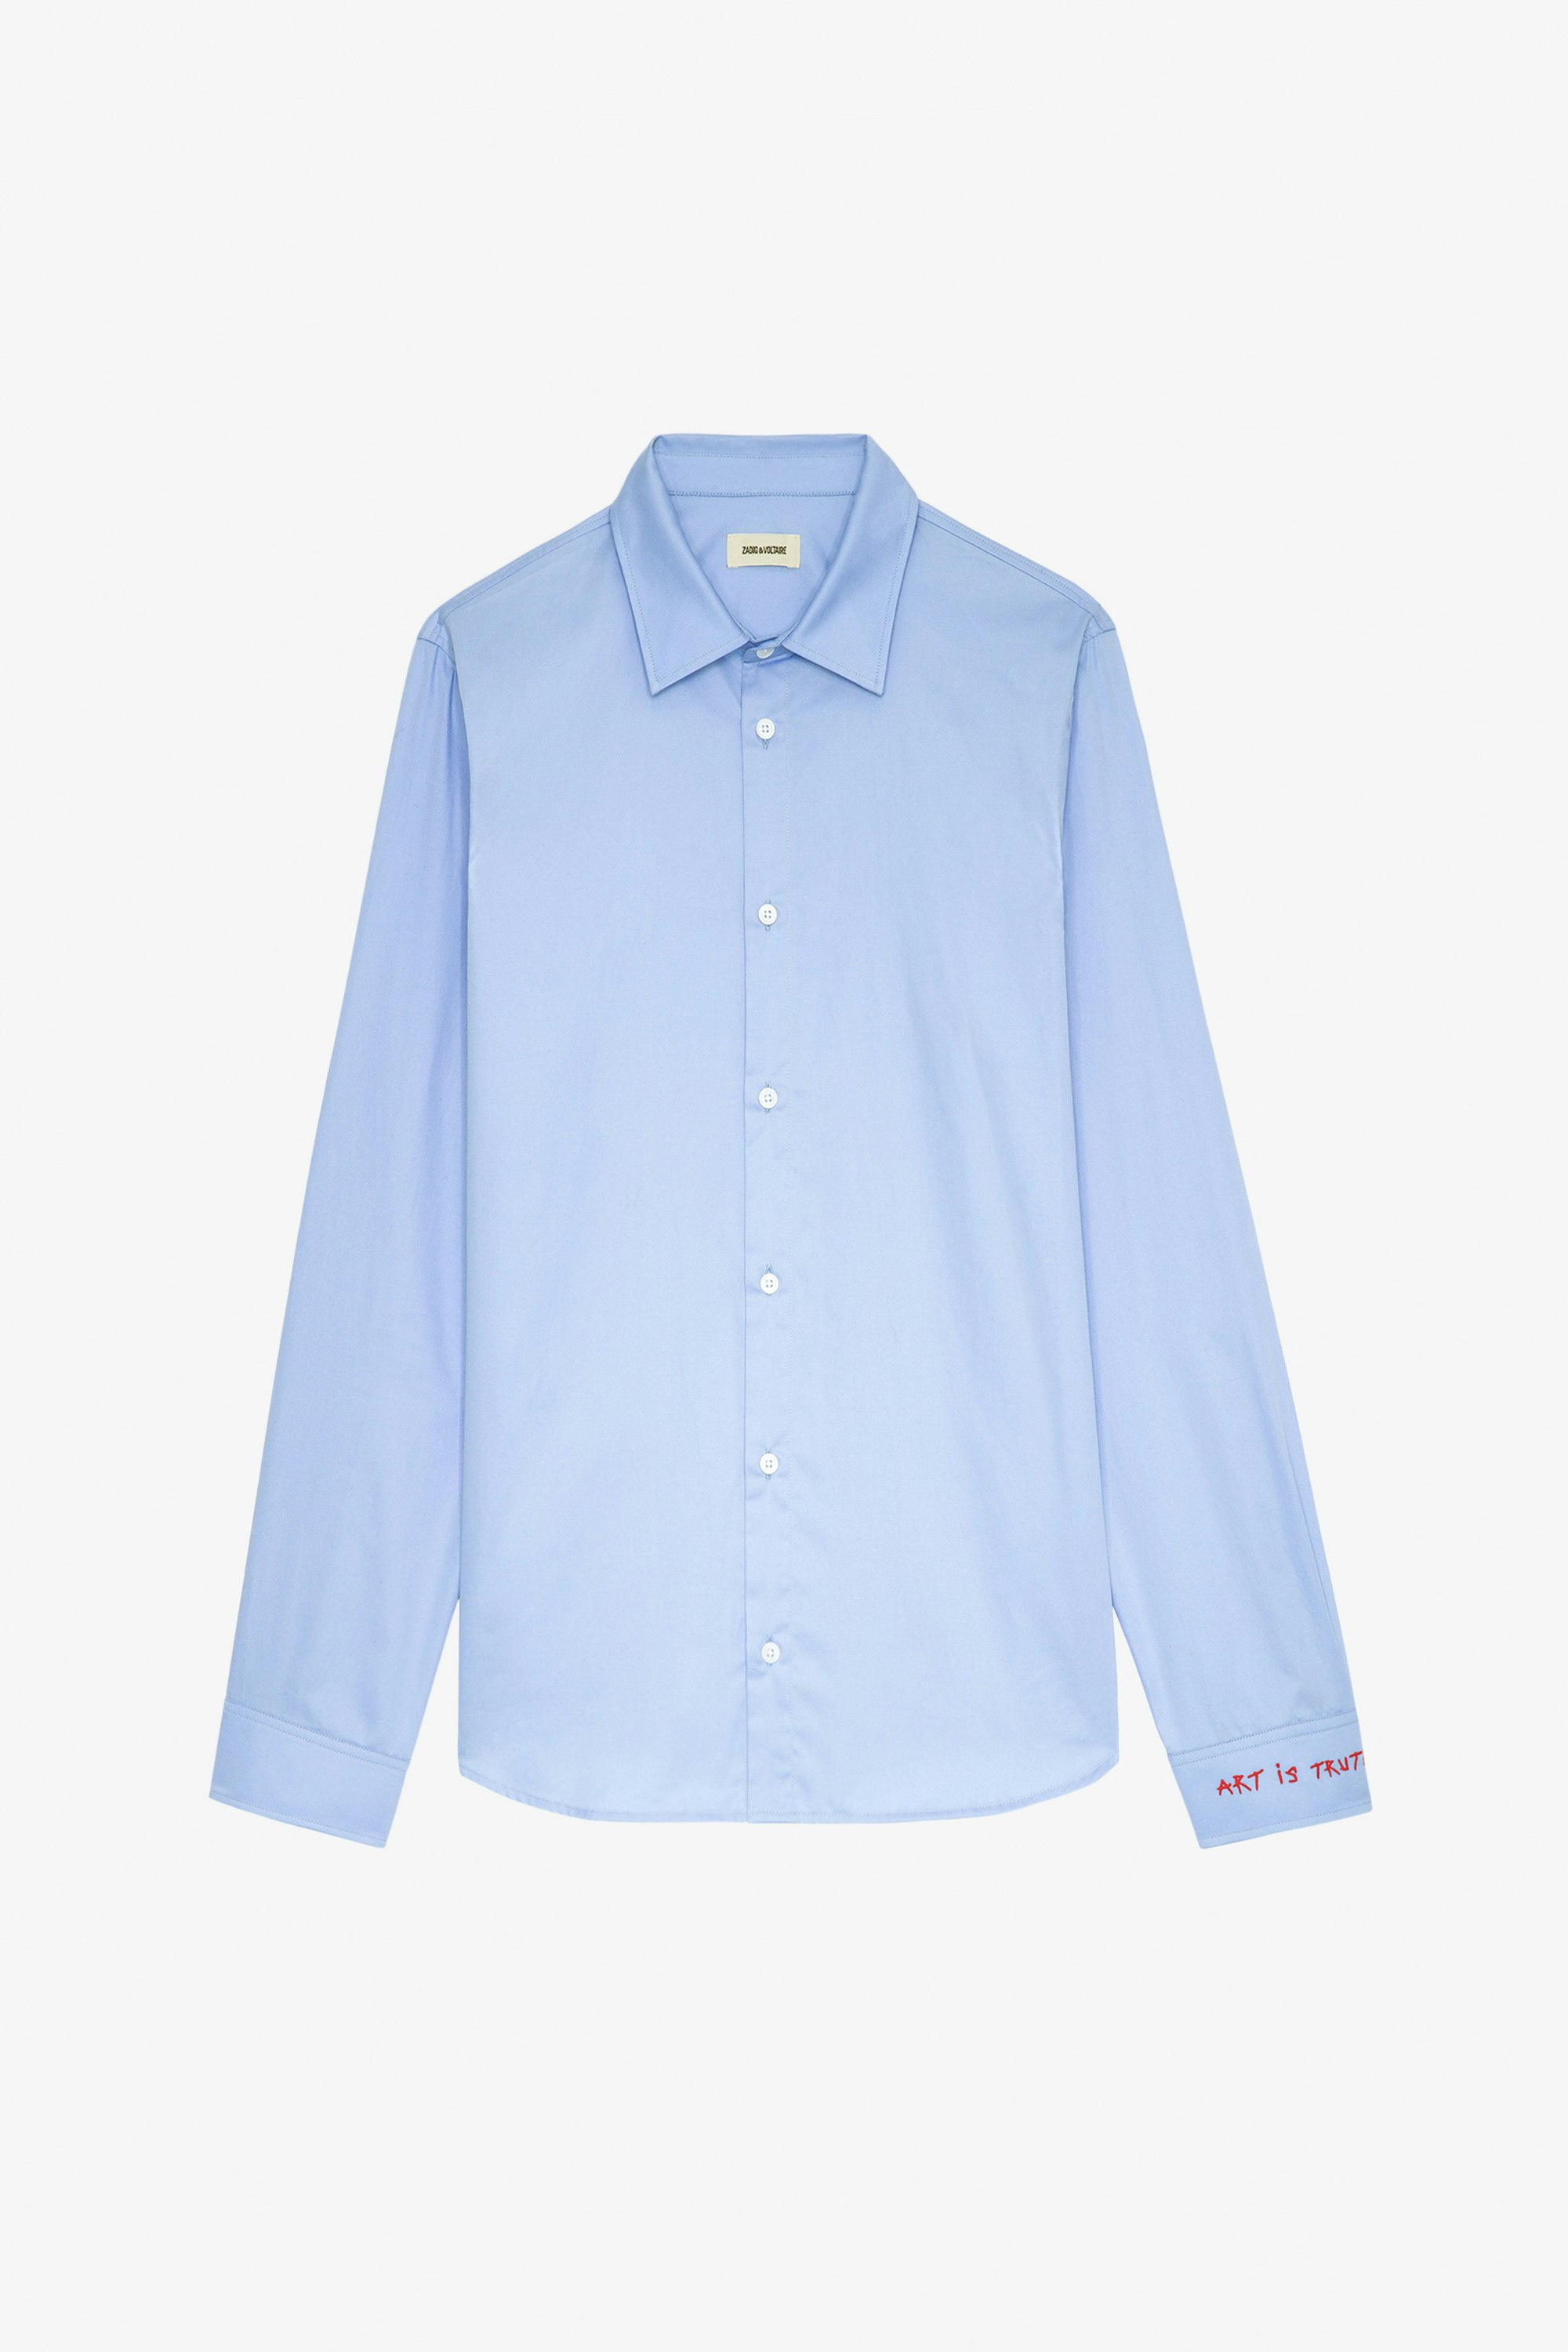 Camisa Sydney - Camisa unisex de algodón en color azul celeste con bordado «Art Is Truth» en el puño derecho.